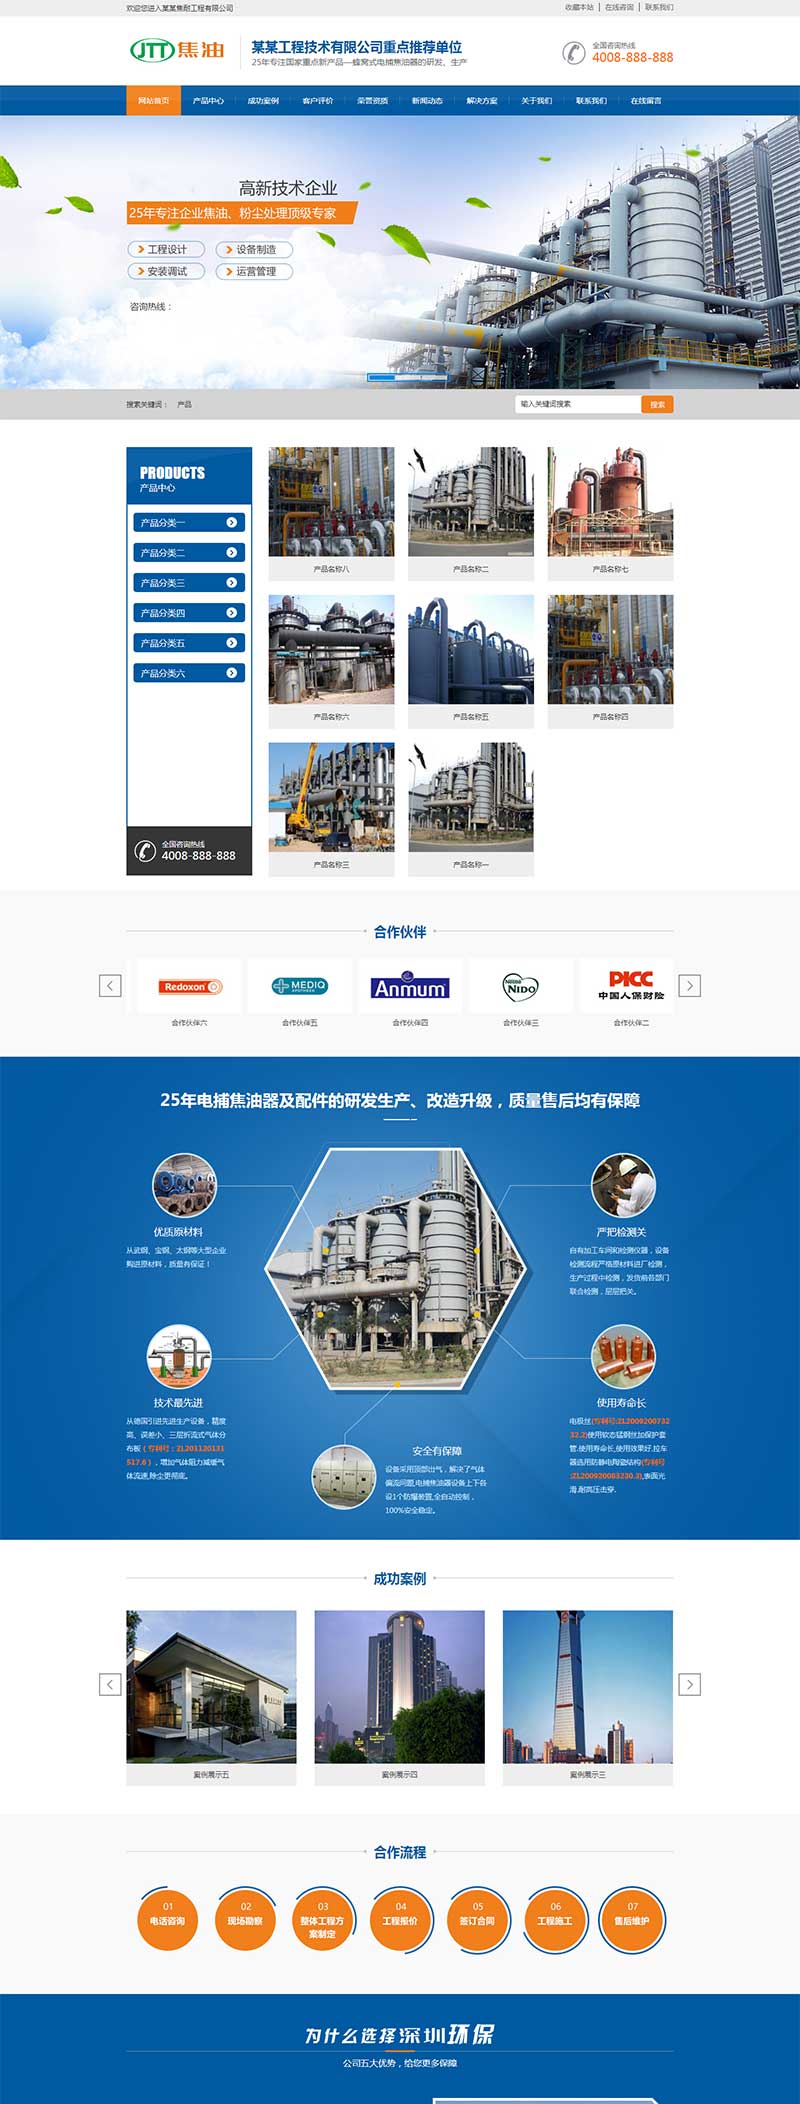 营销型焦油环保设备类网站织梦模板 蓝色营销型工业设备网站源码